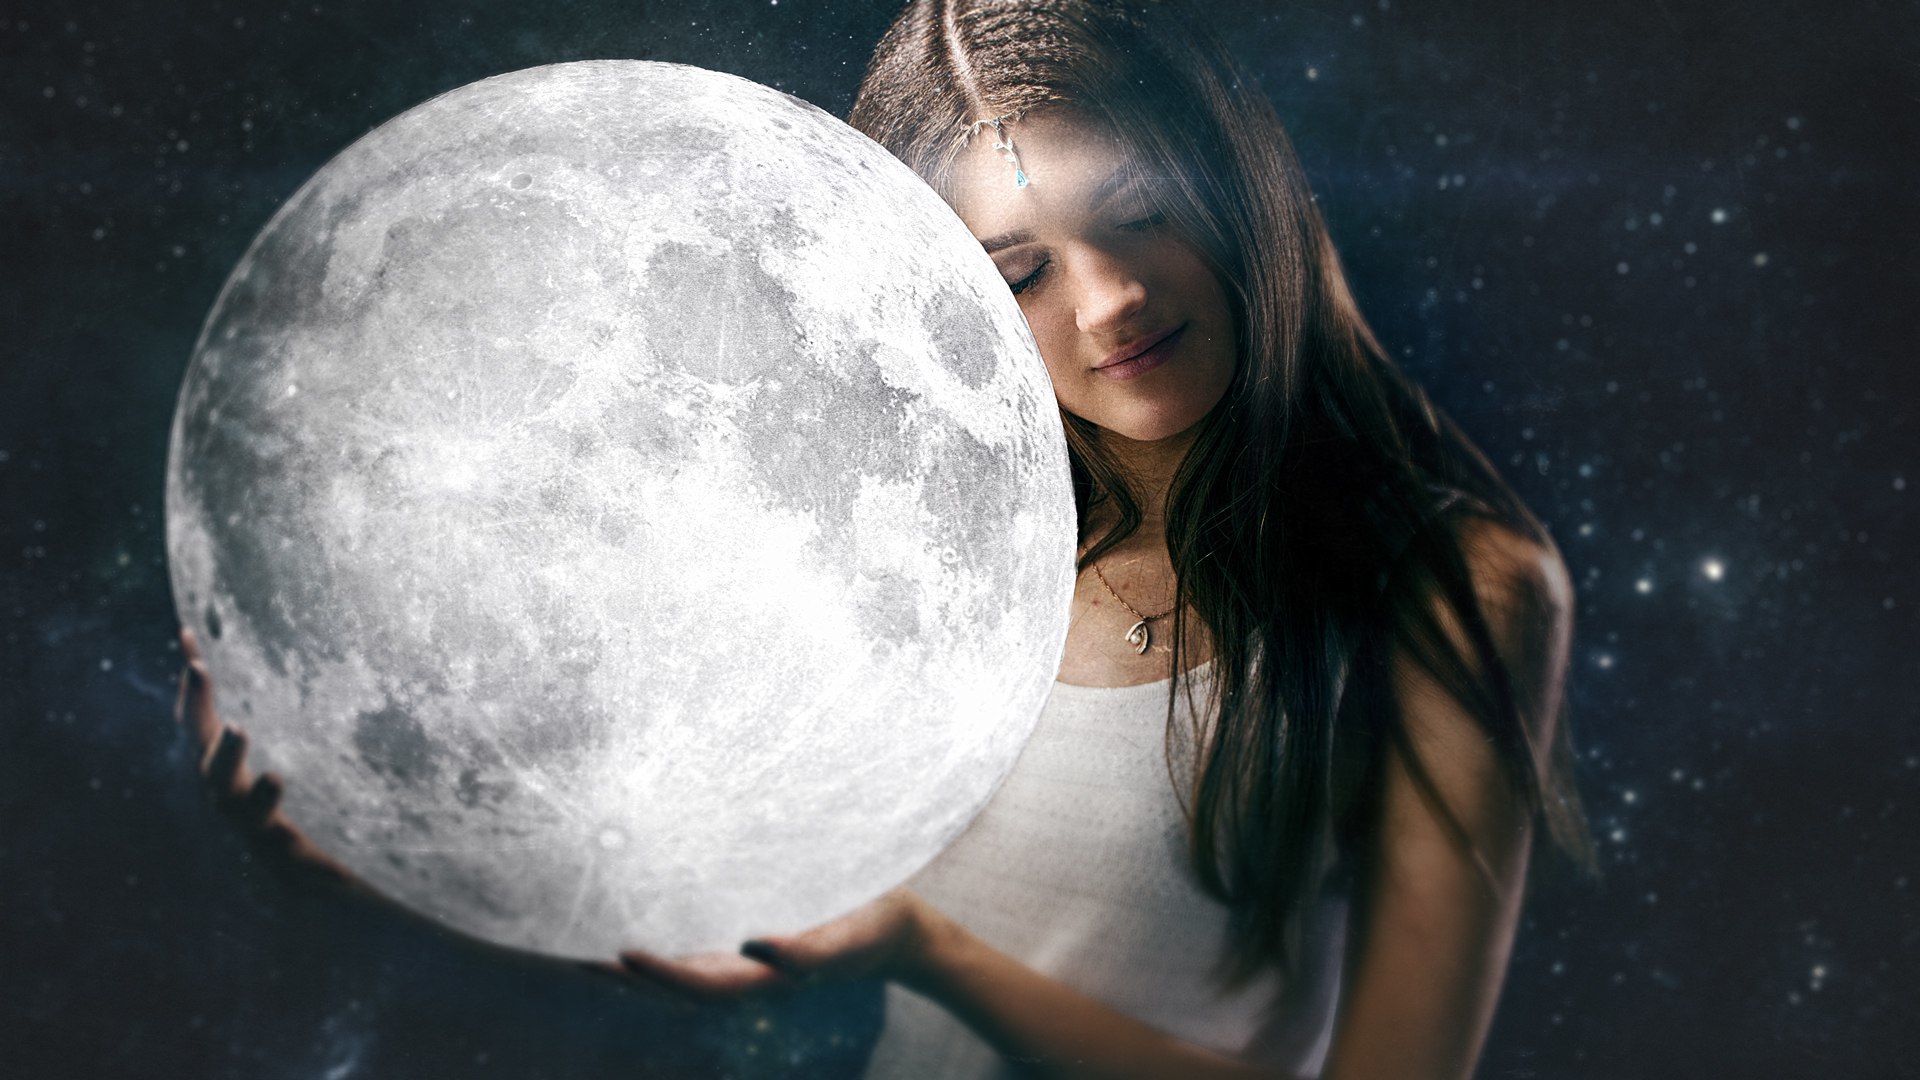 Про девочку луну. Девушка-Луна. Девочка на Луне. Девушка держит луну.